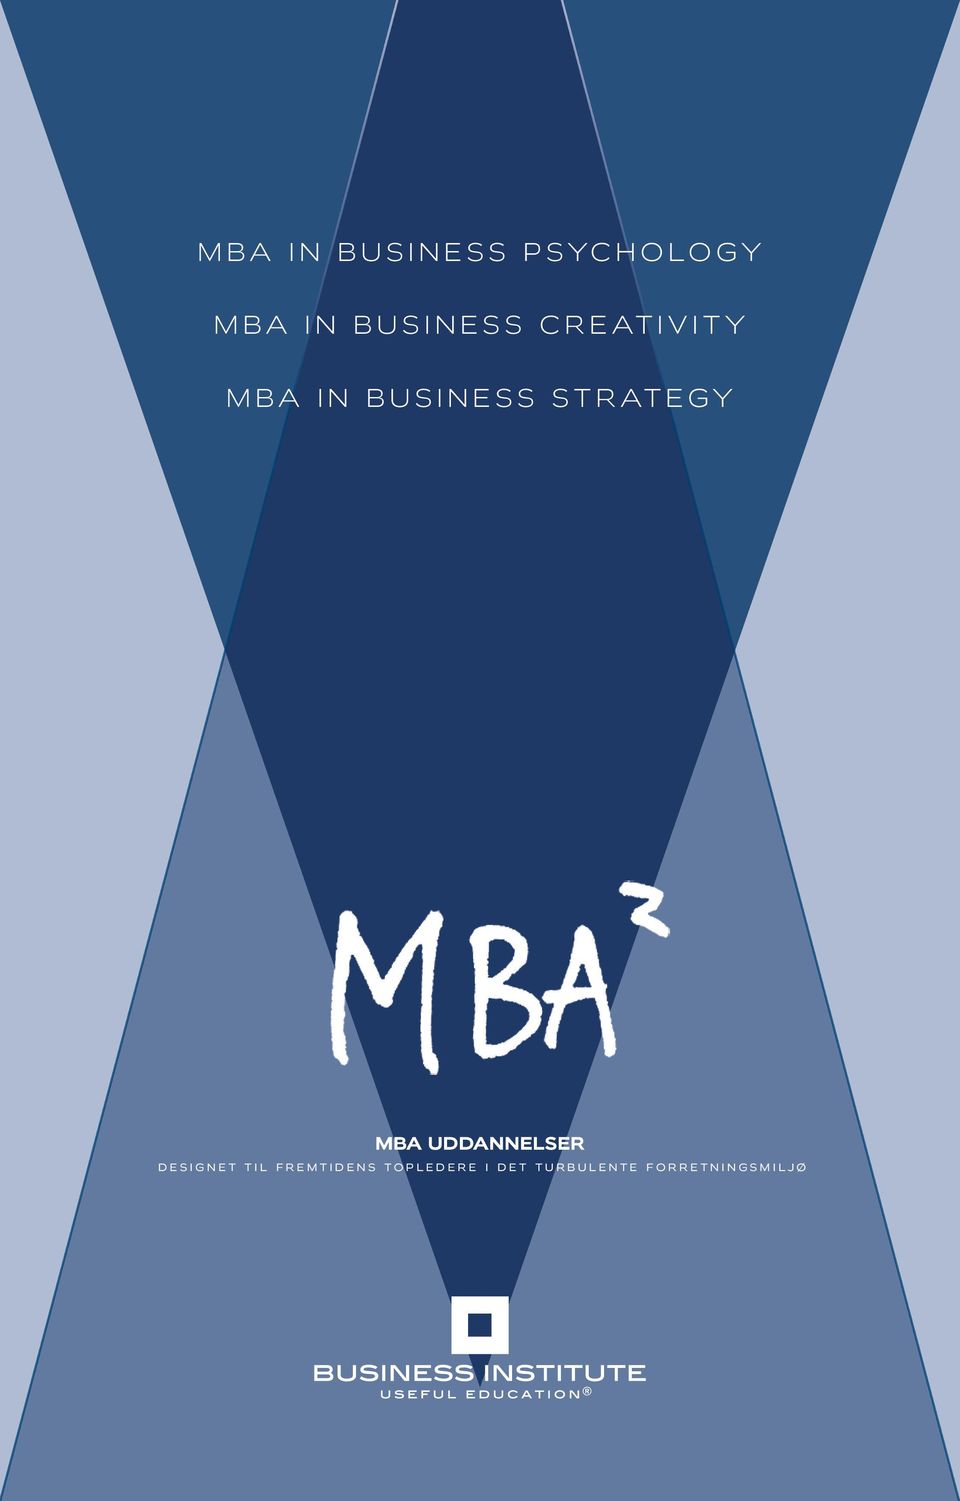 Strategy MBA uddannelser designet til